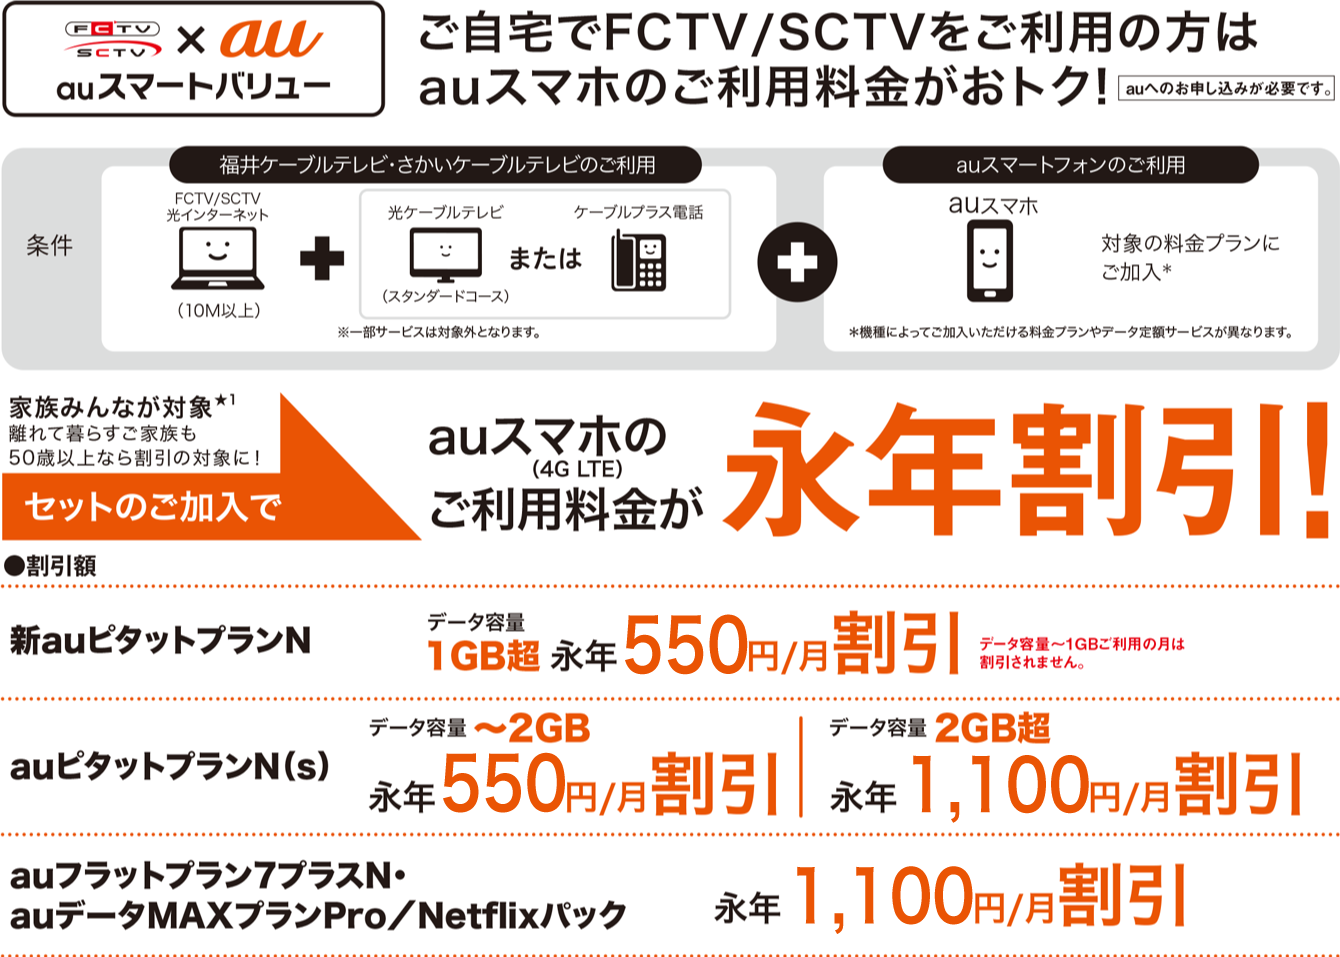 FCTV/SCTV+auスマートバリュー